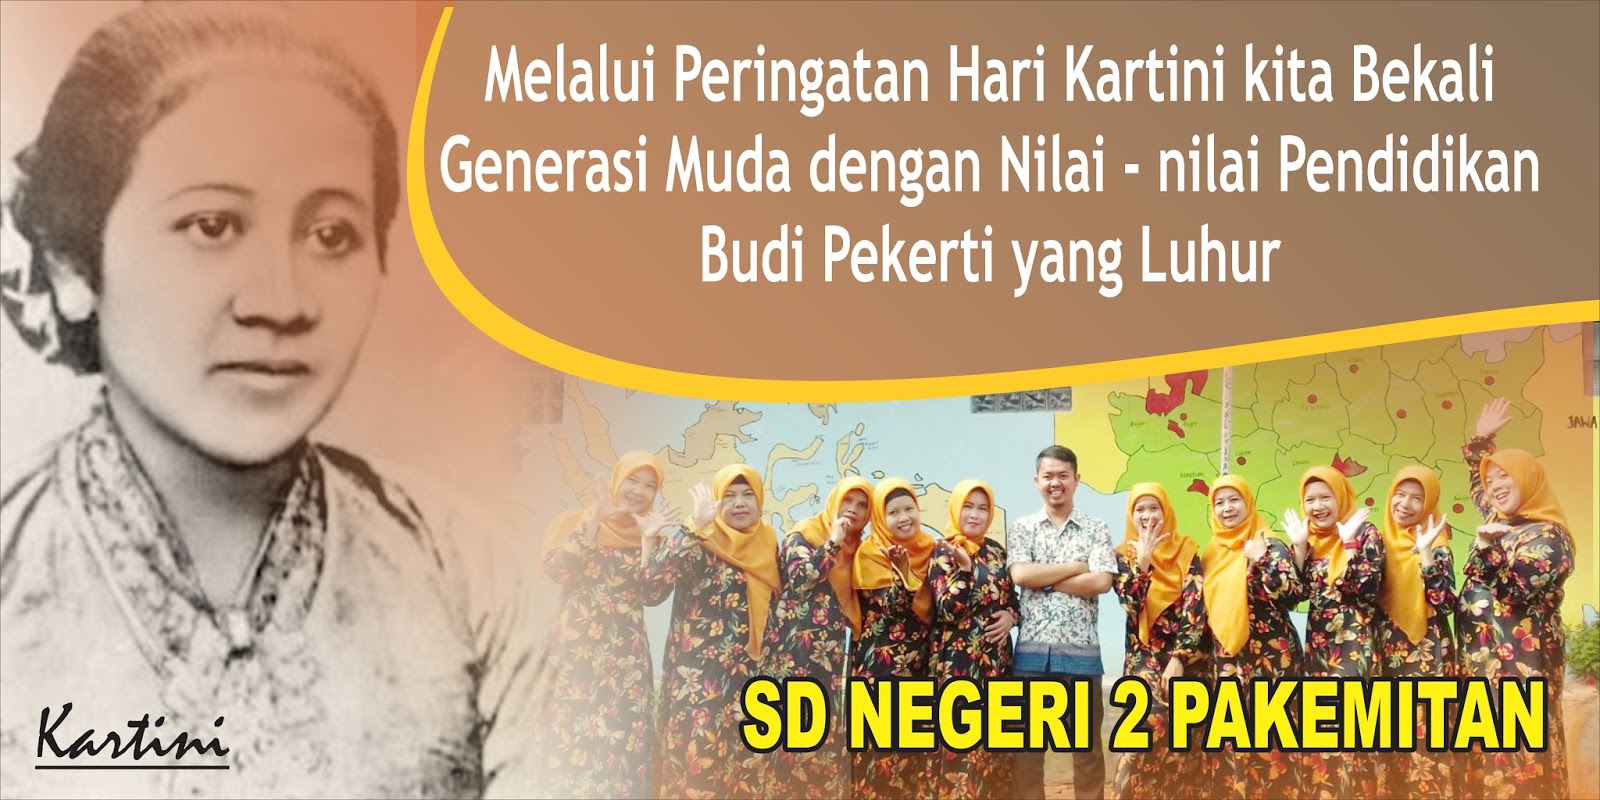 Contoh Banner Memperingati Hari Kartini